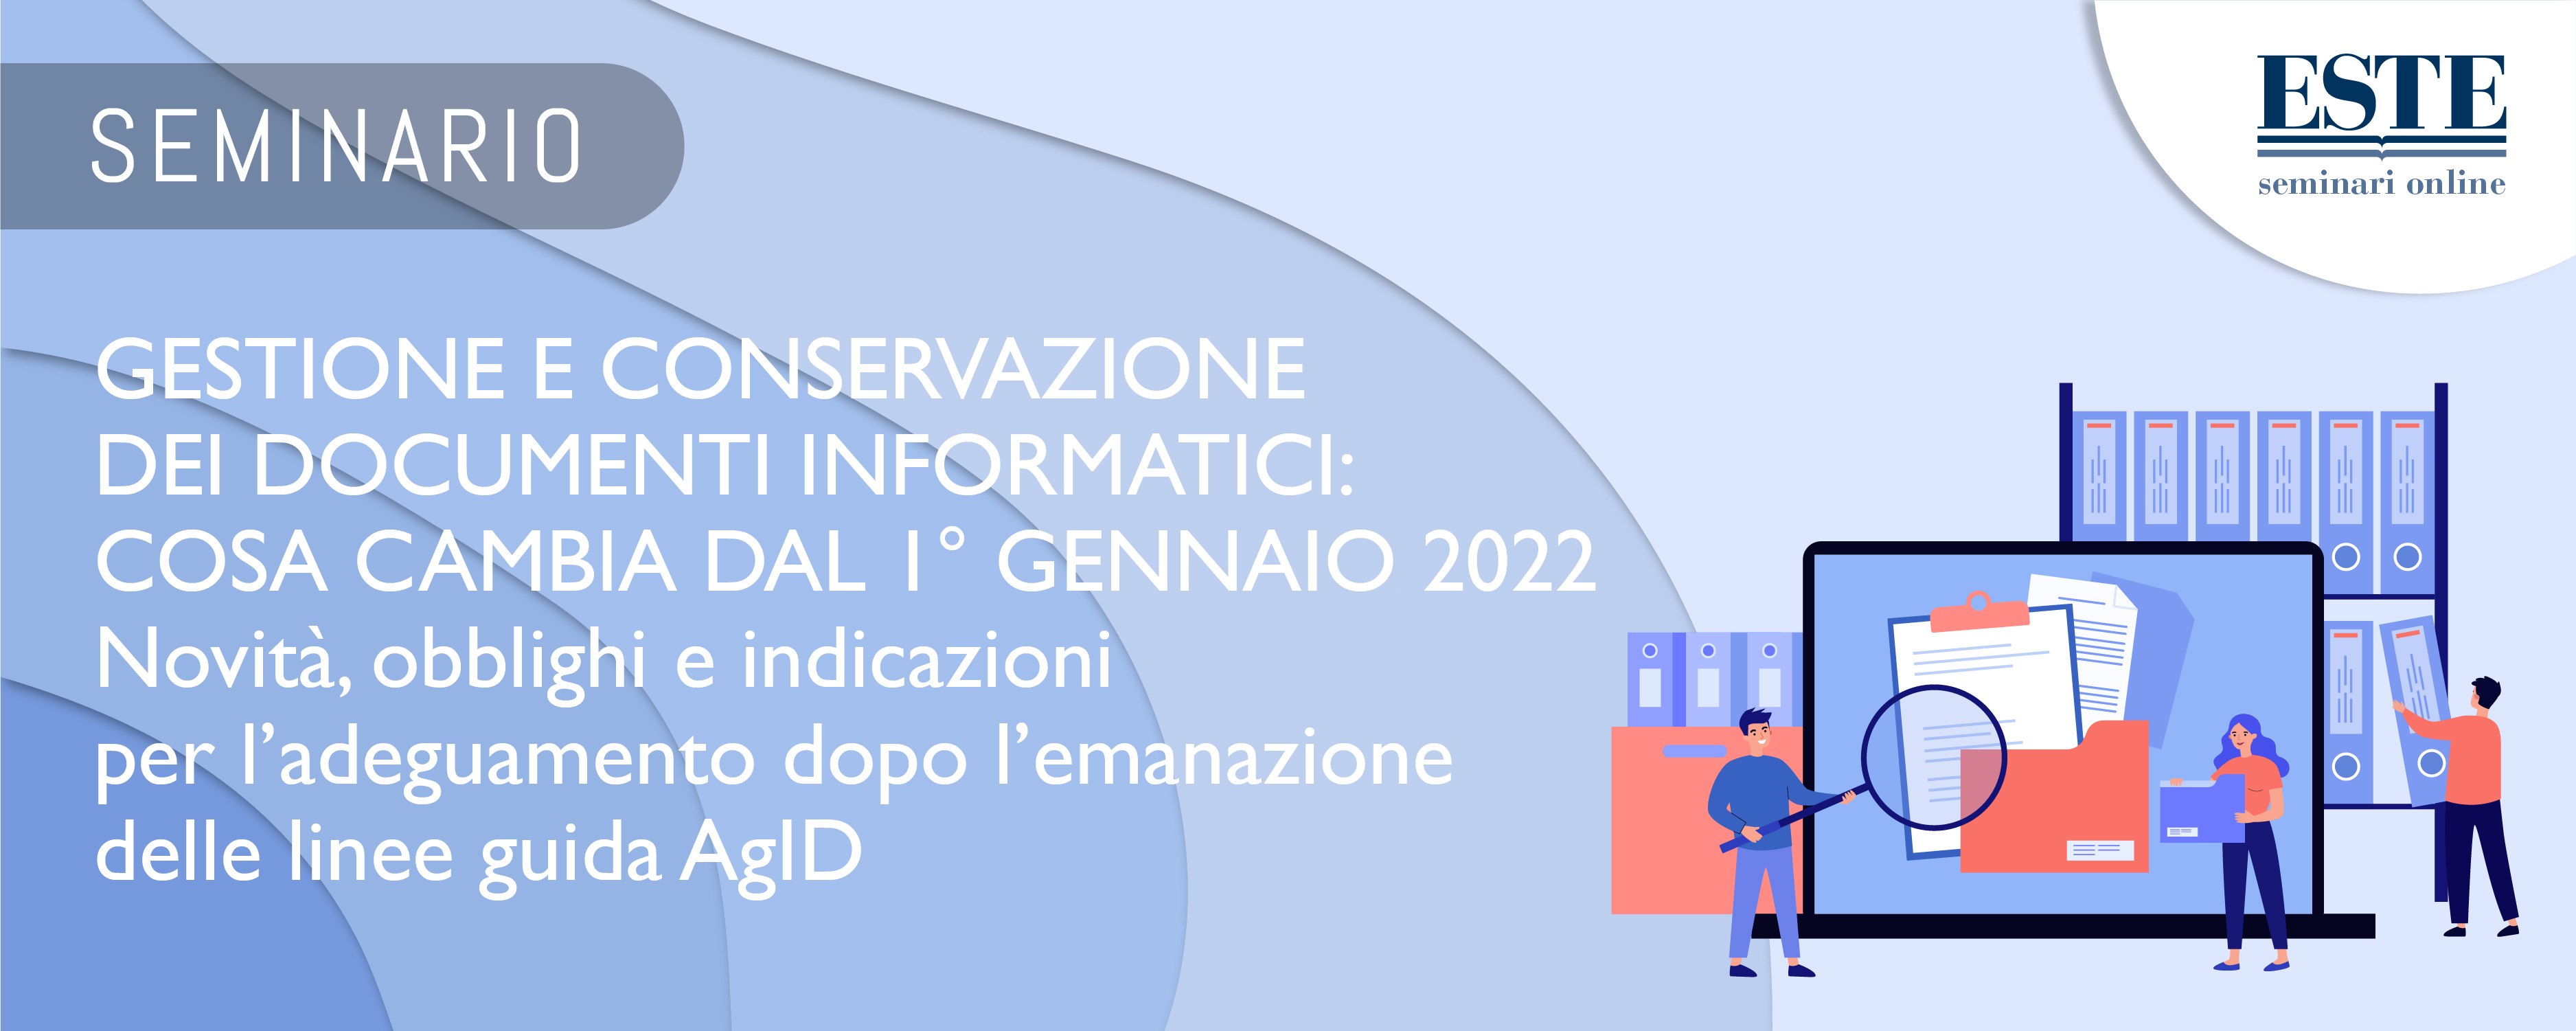 Gestione e conservazione dei documenti informatici: cosa cambia dal 1 gennaio 2022